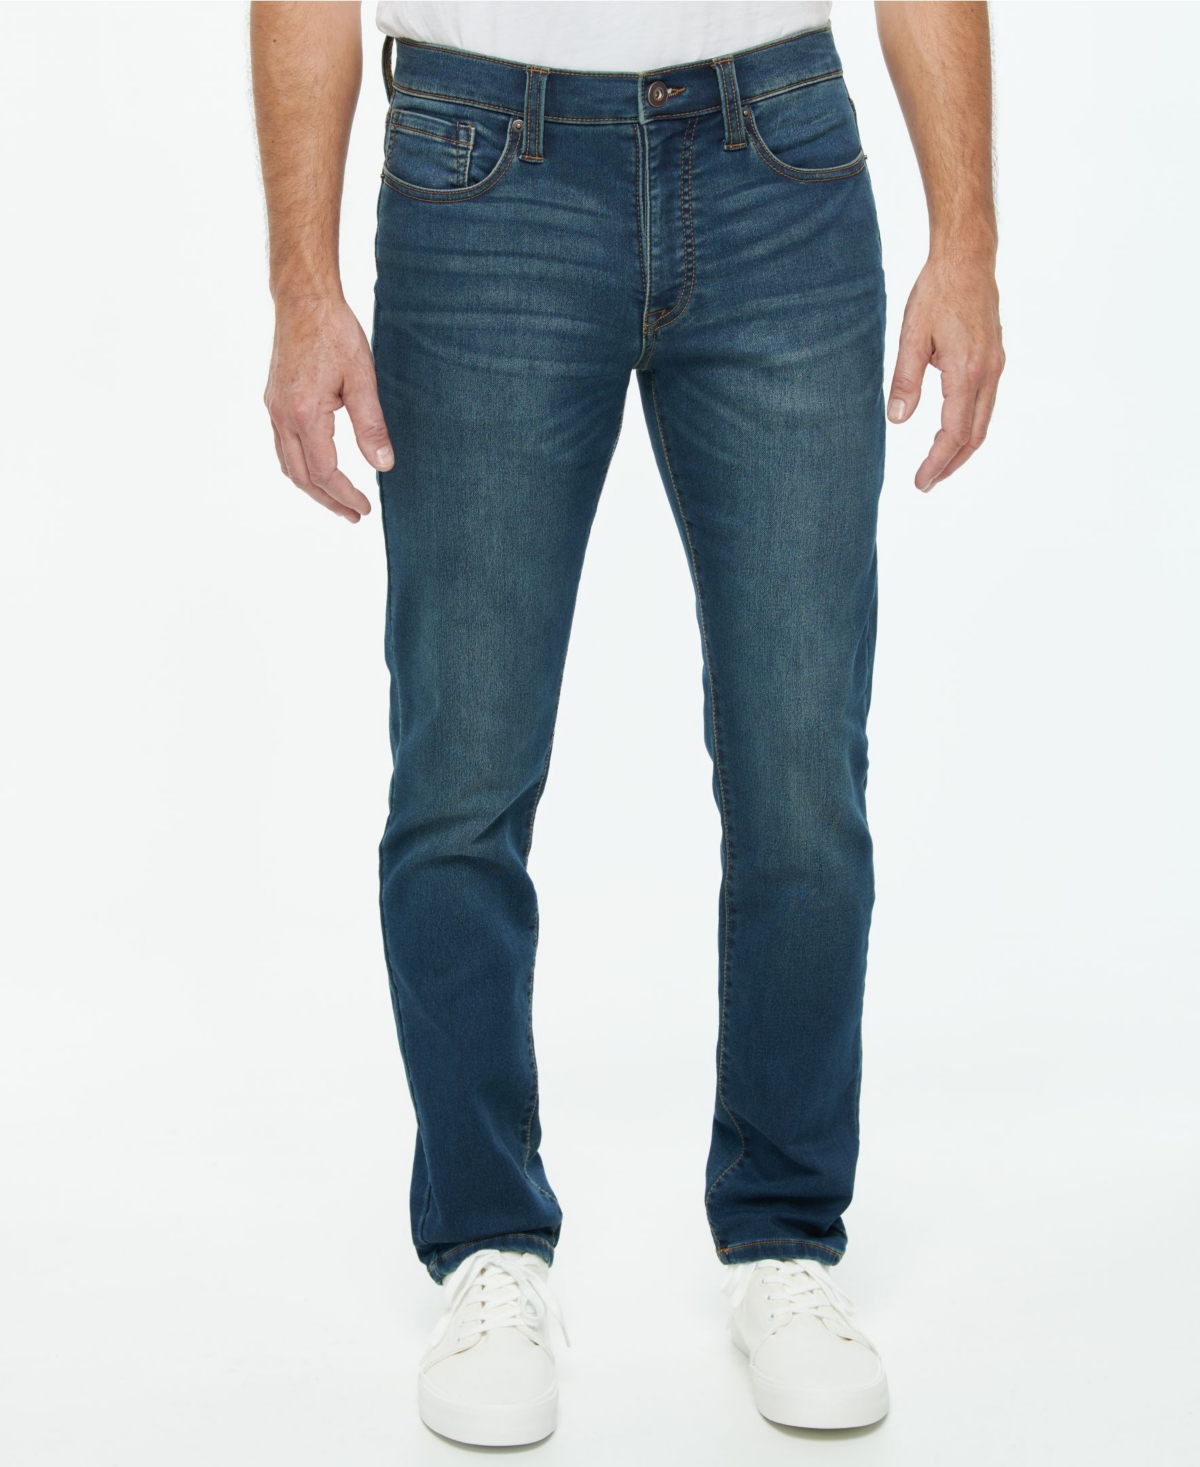 Men's Maximum Comfort Flex Skinny-Fit Knit Jean - Dakota